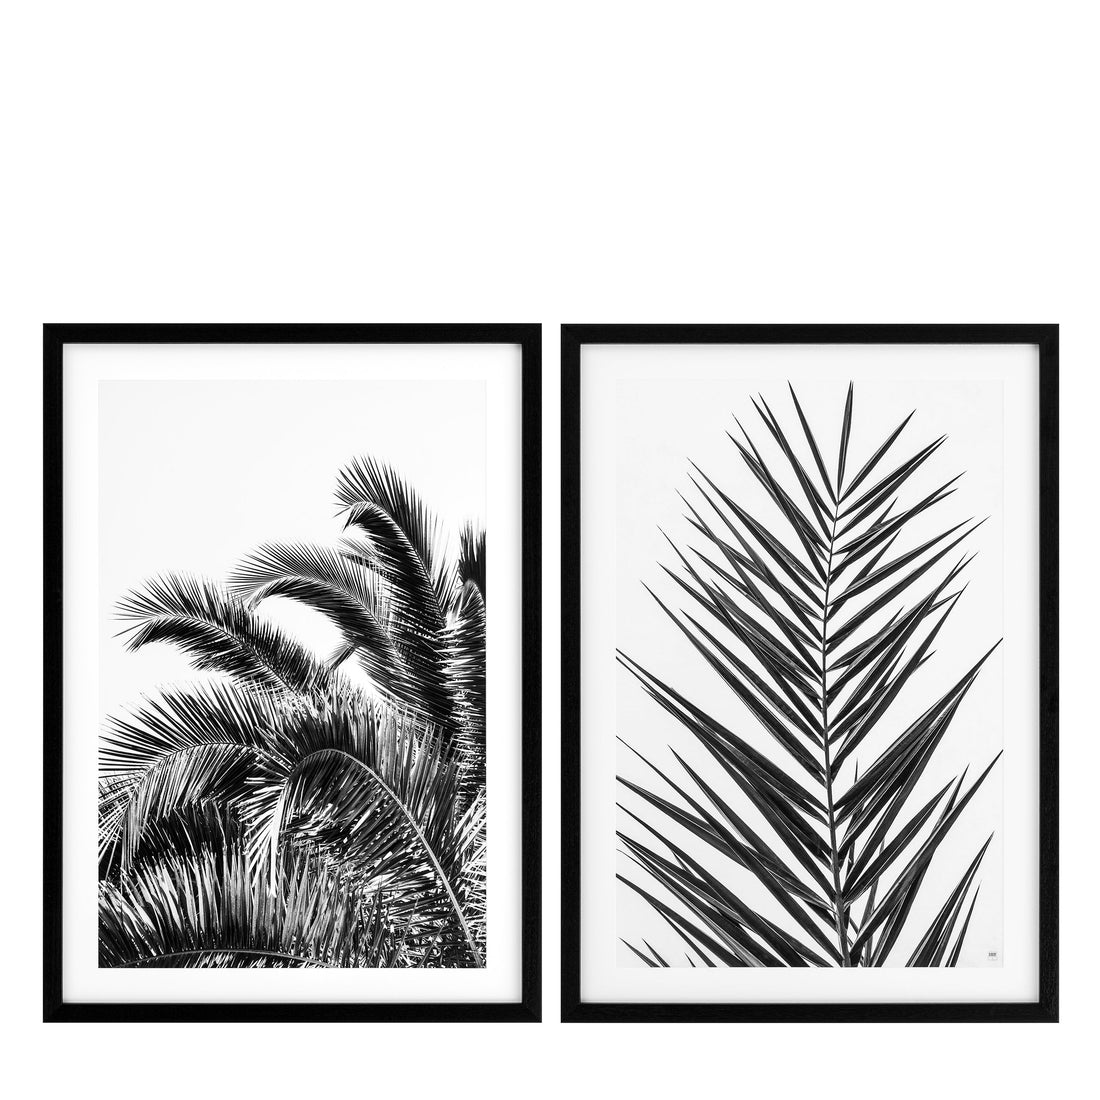 Imprima el juego de hojas de palma EC274 de 2